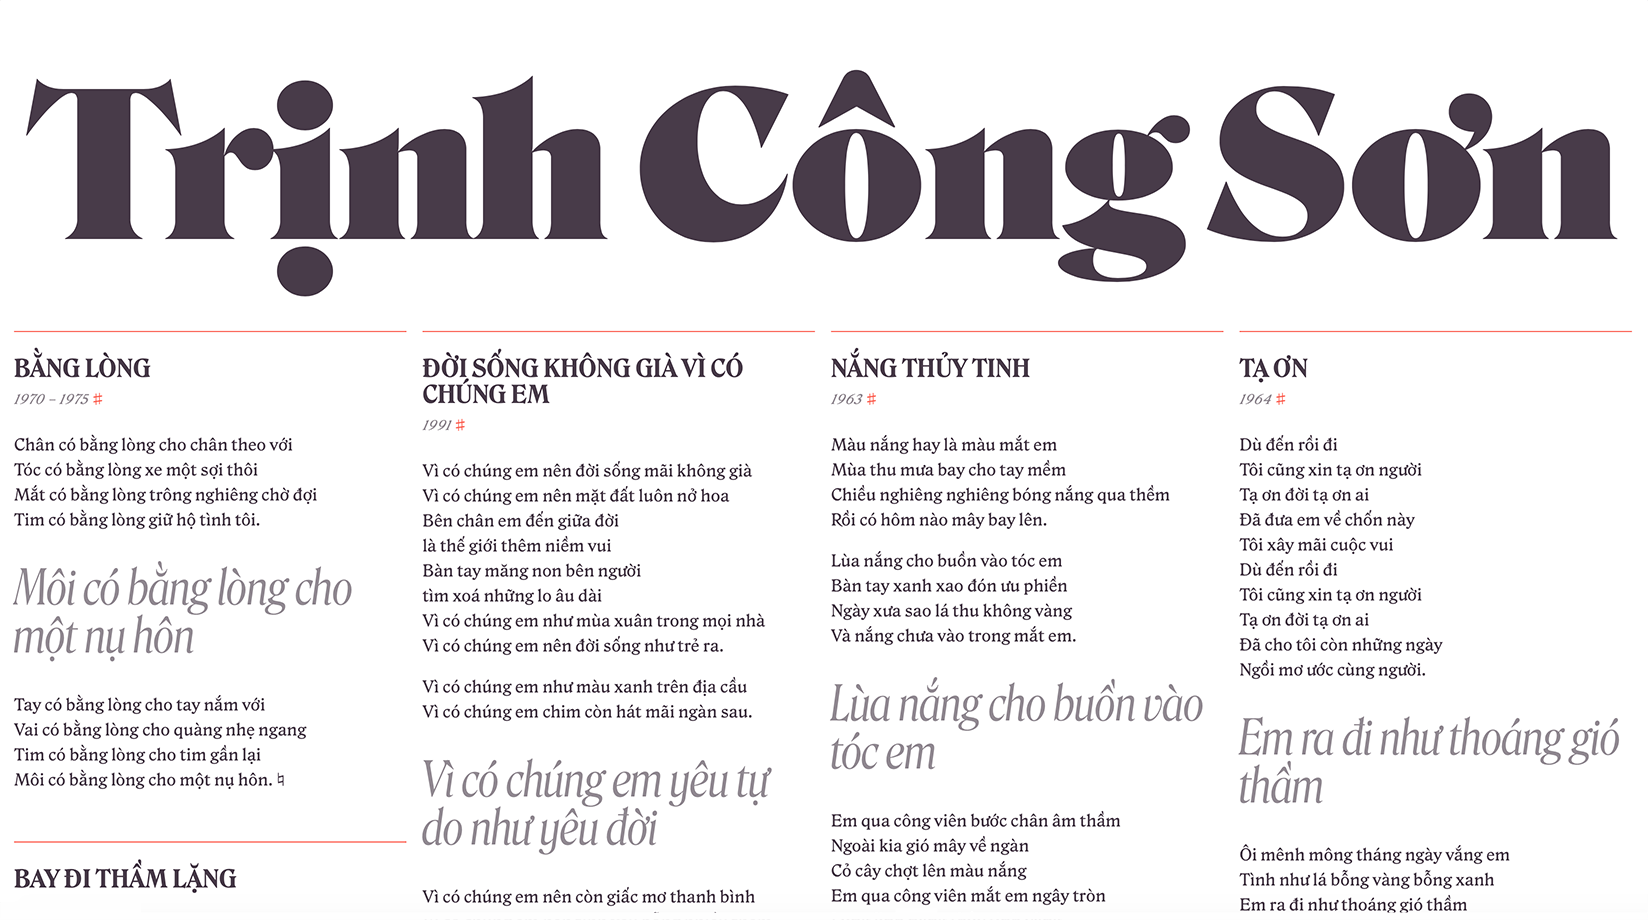 Trịnh Công Son’s Lyrics